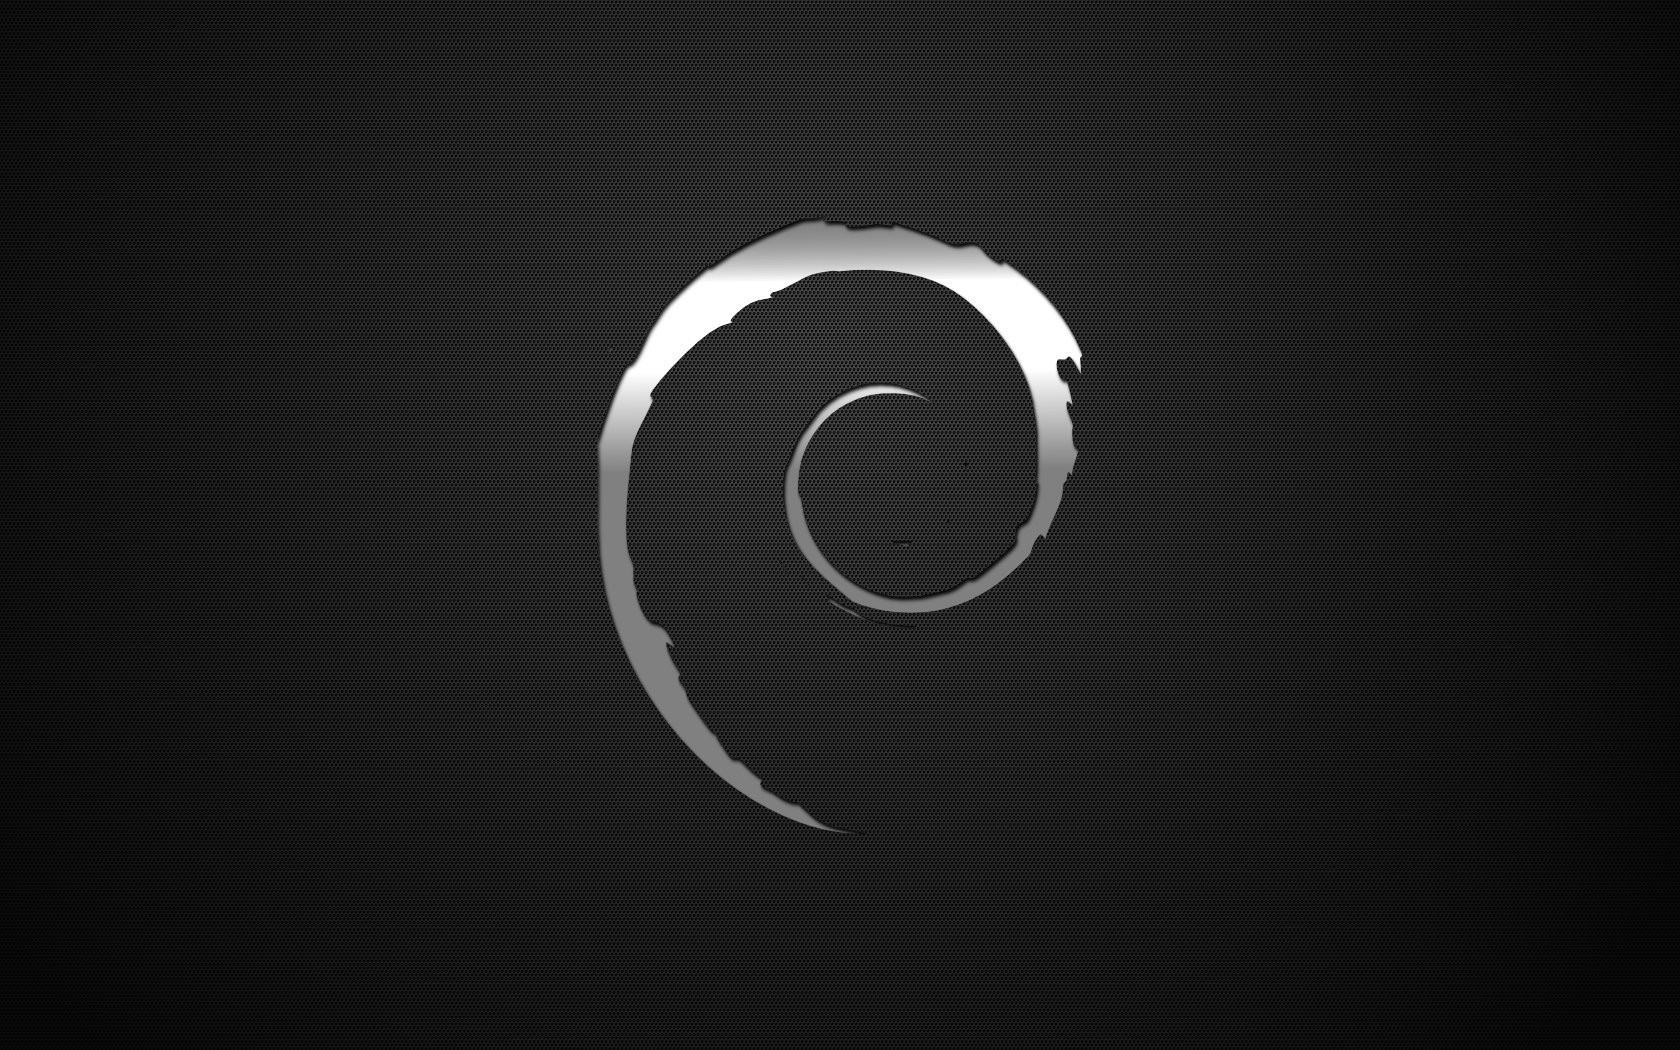 Silver Debian Logo wallpaper. Silver Debian Logo